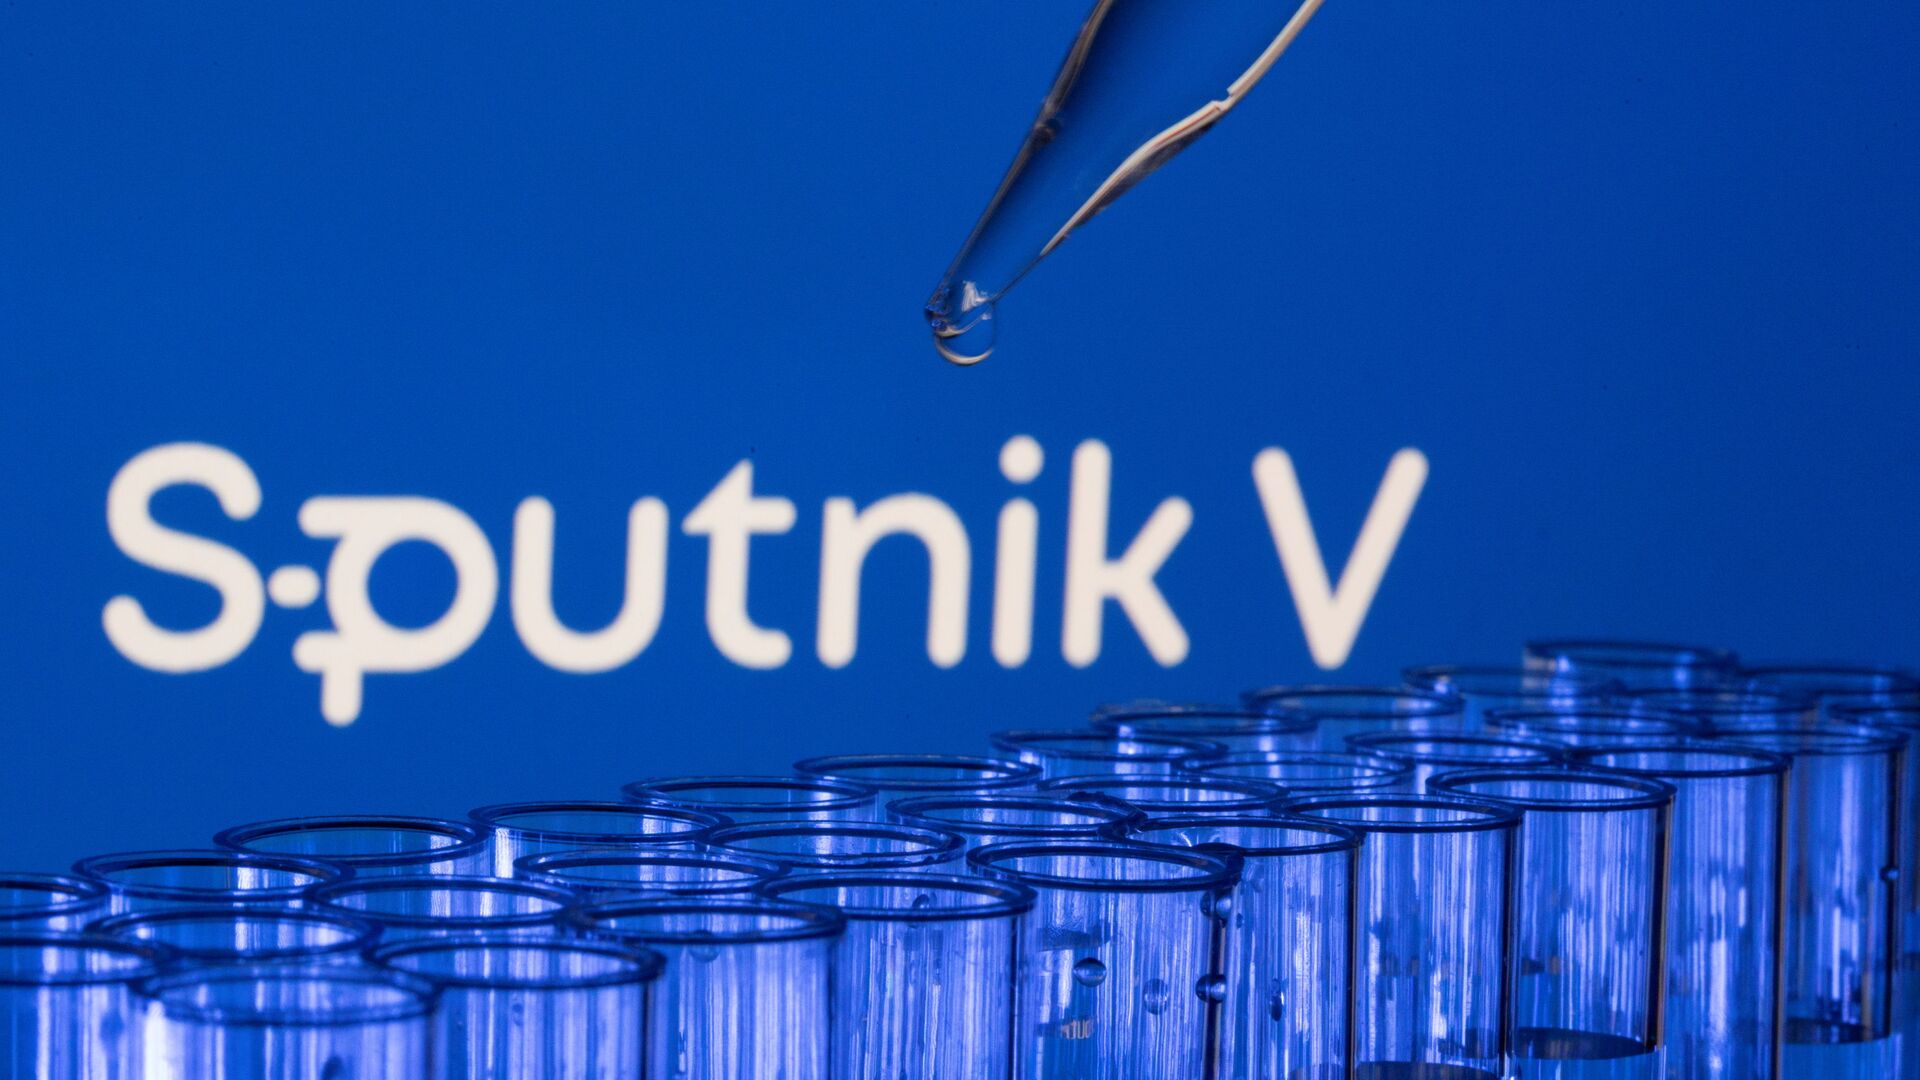 Các ống est được nhìn thấy phía trước logo Sputnik V được hiển thị trong hình minh họa này được chụp, ngày 21 tháng 5 năm 2021. - Sputnik Việt Nam, 1920, 28.08.2021